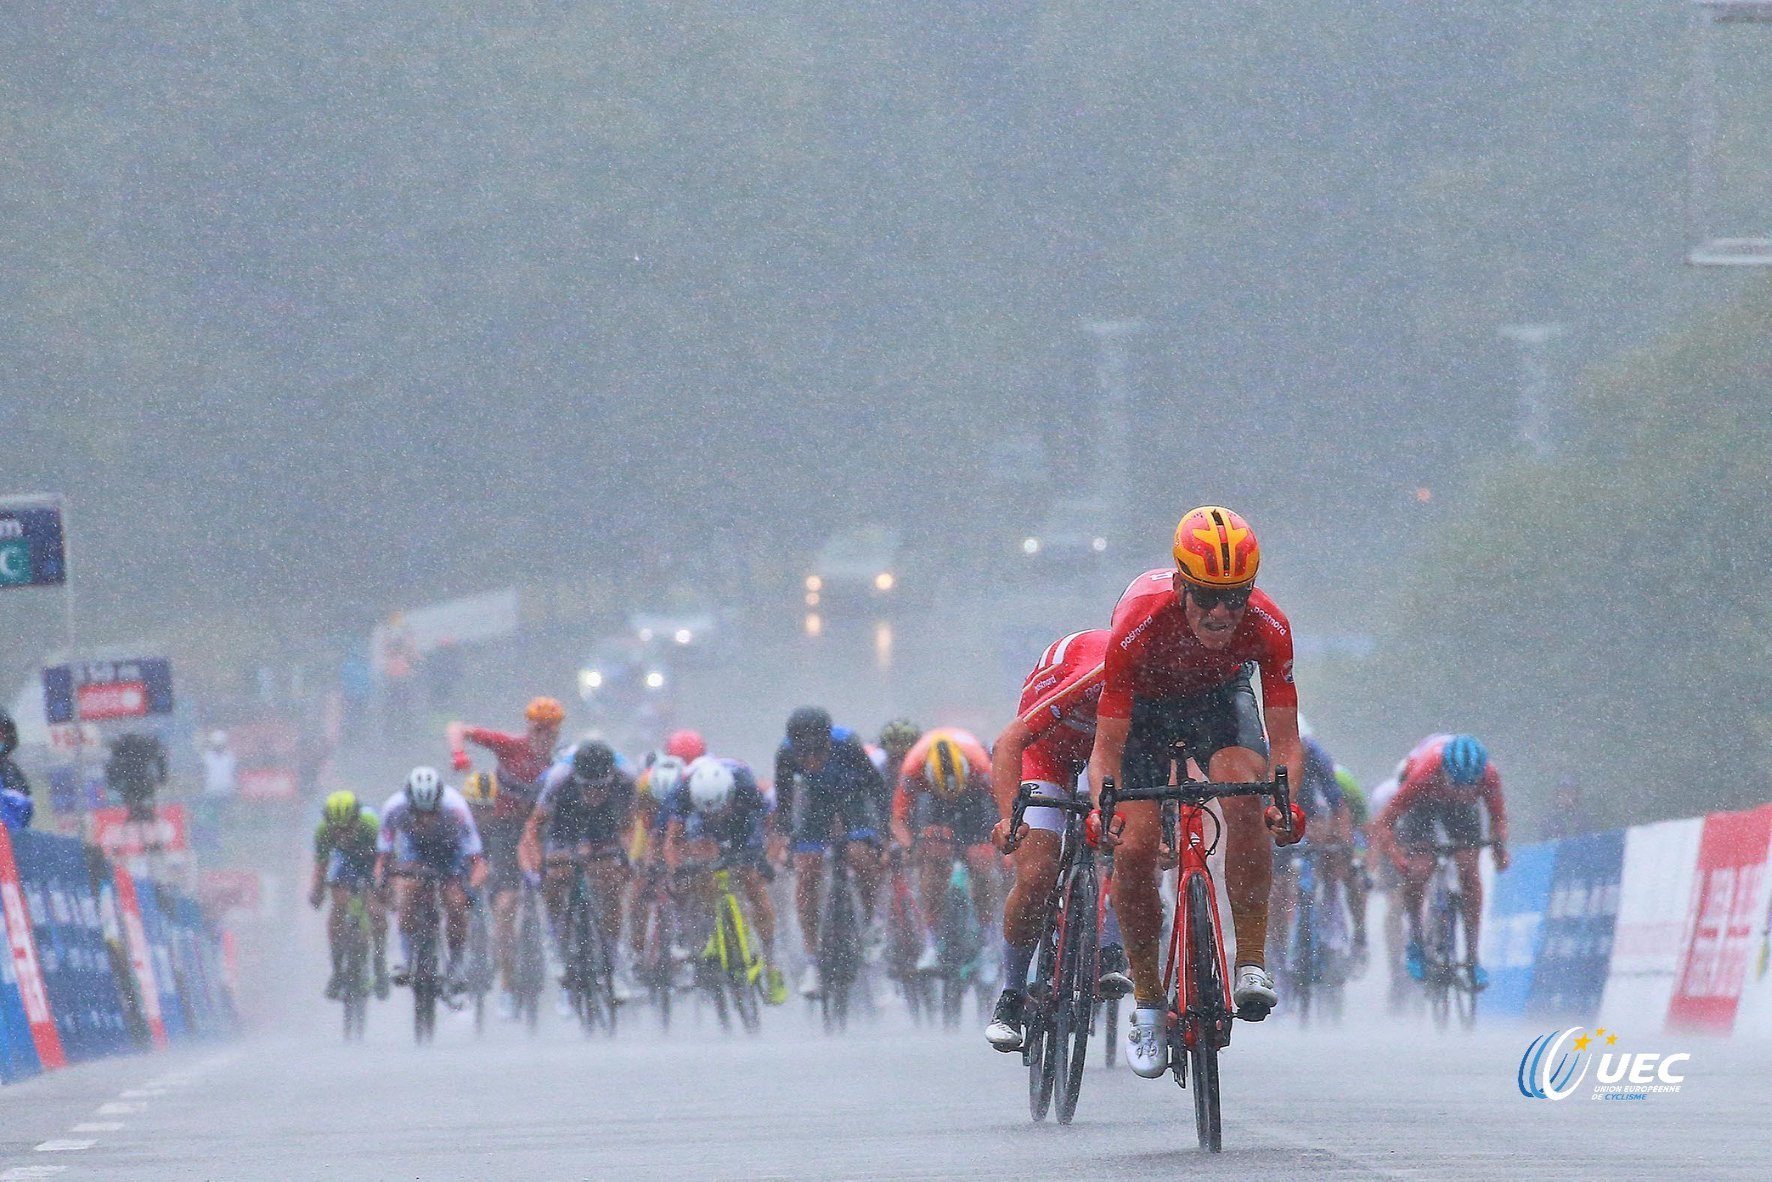 Йонас Иверсби Хвидеберг под суровым дождём выиграл титул чемпиона Европы по велоспорту среди андеров